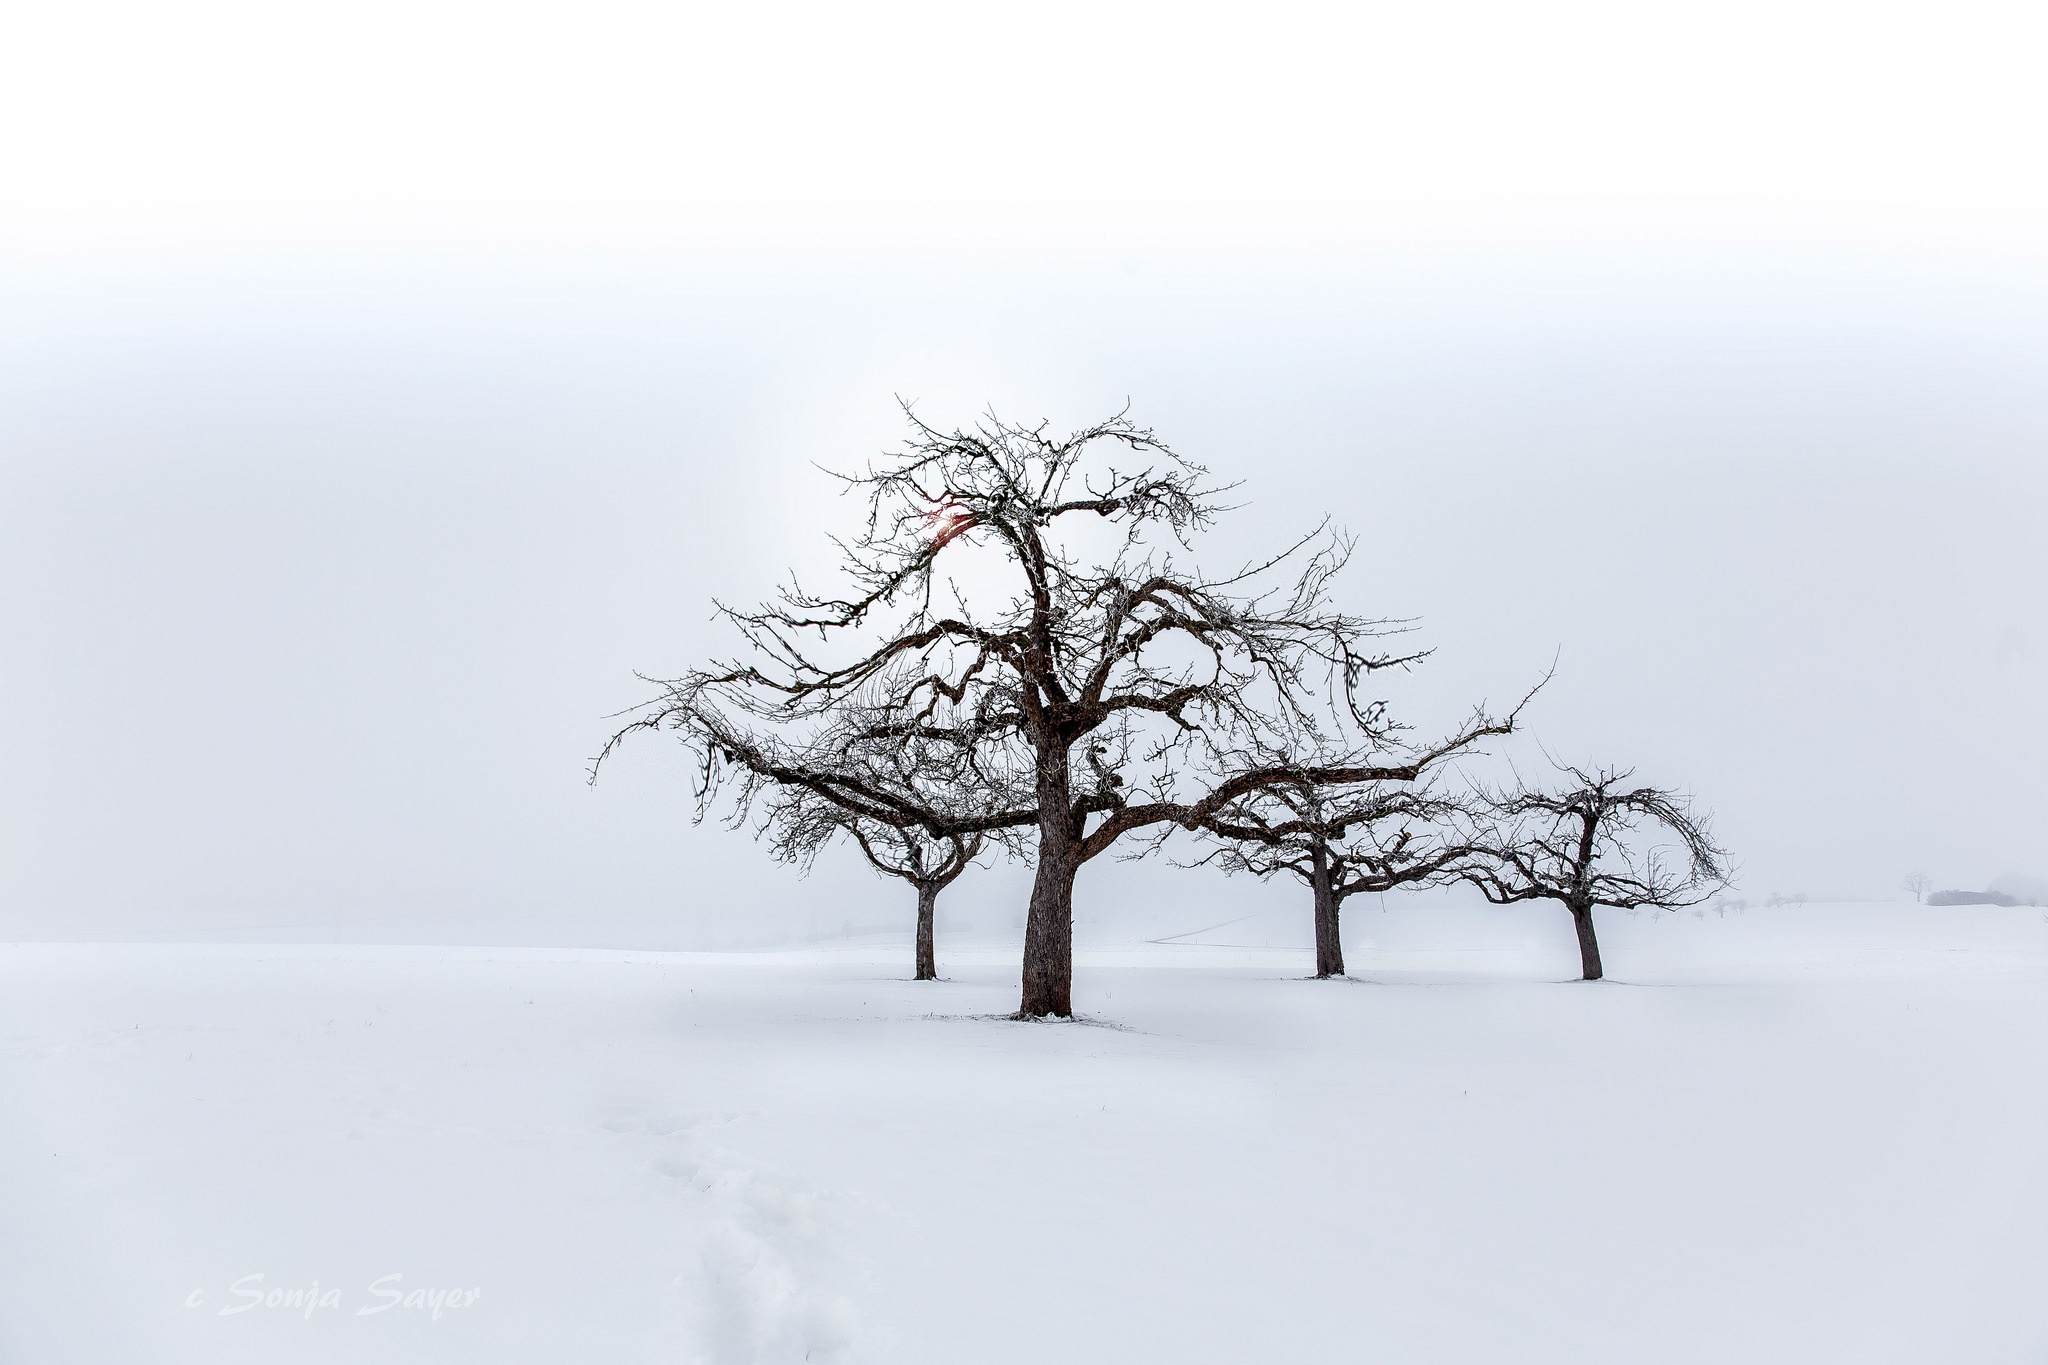 Скачать обои бесплатно Зима, Снег, Дерево, Туман, Земля/природа картинка на рабочий стол ПК